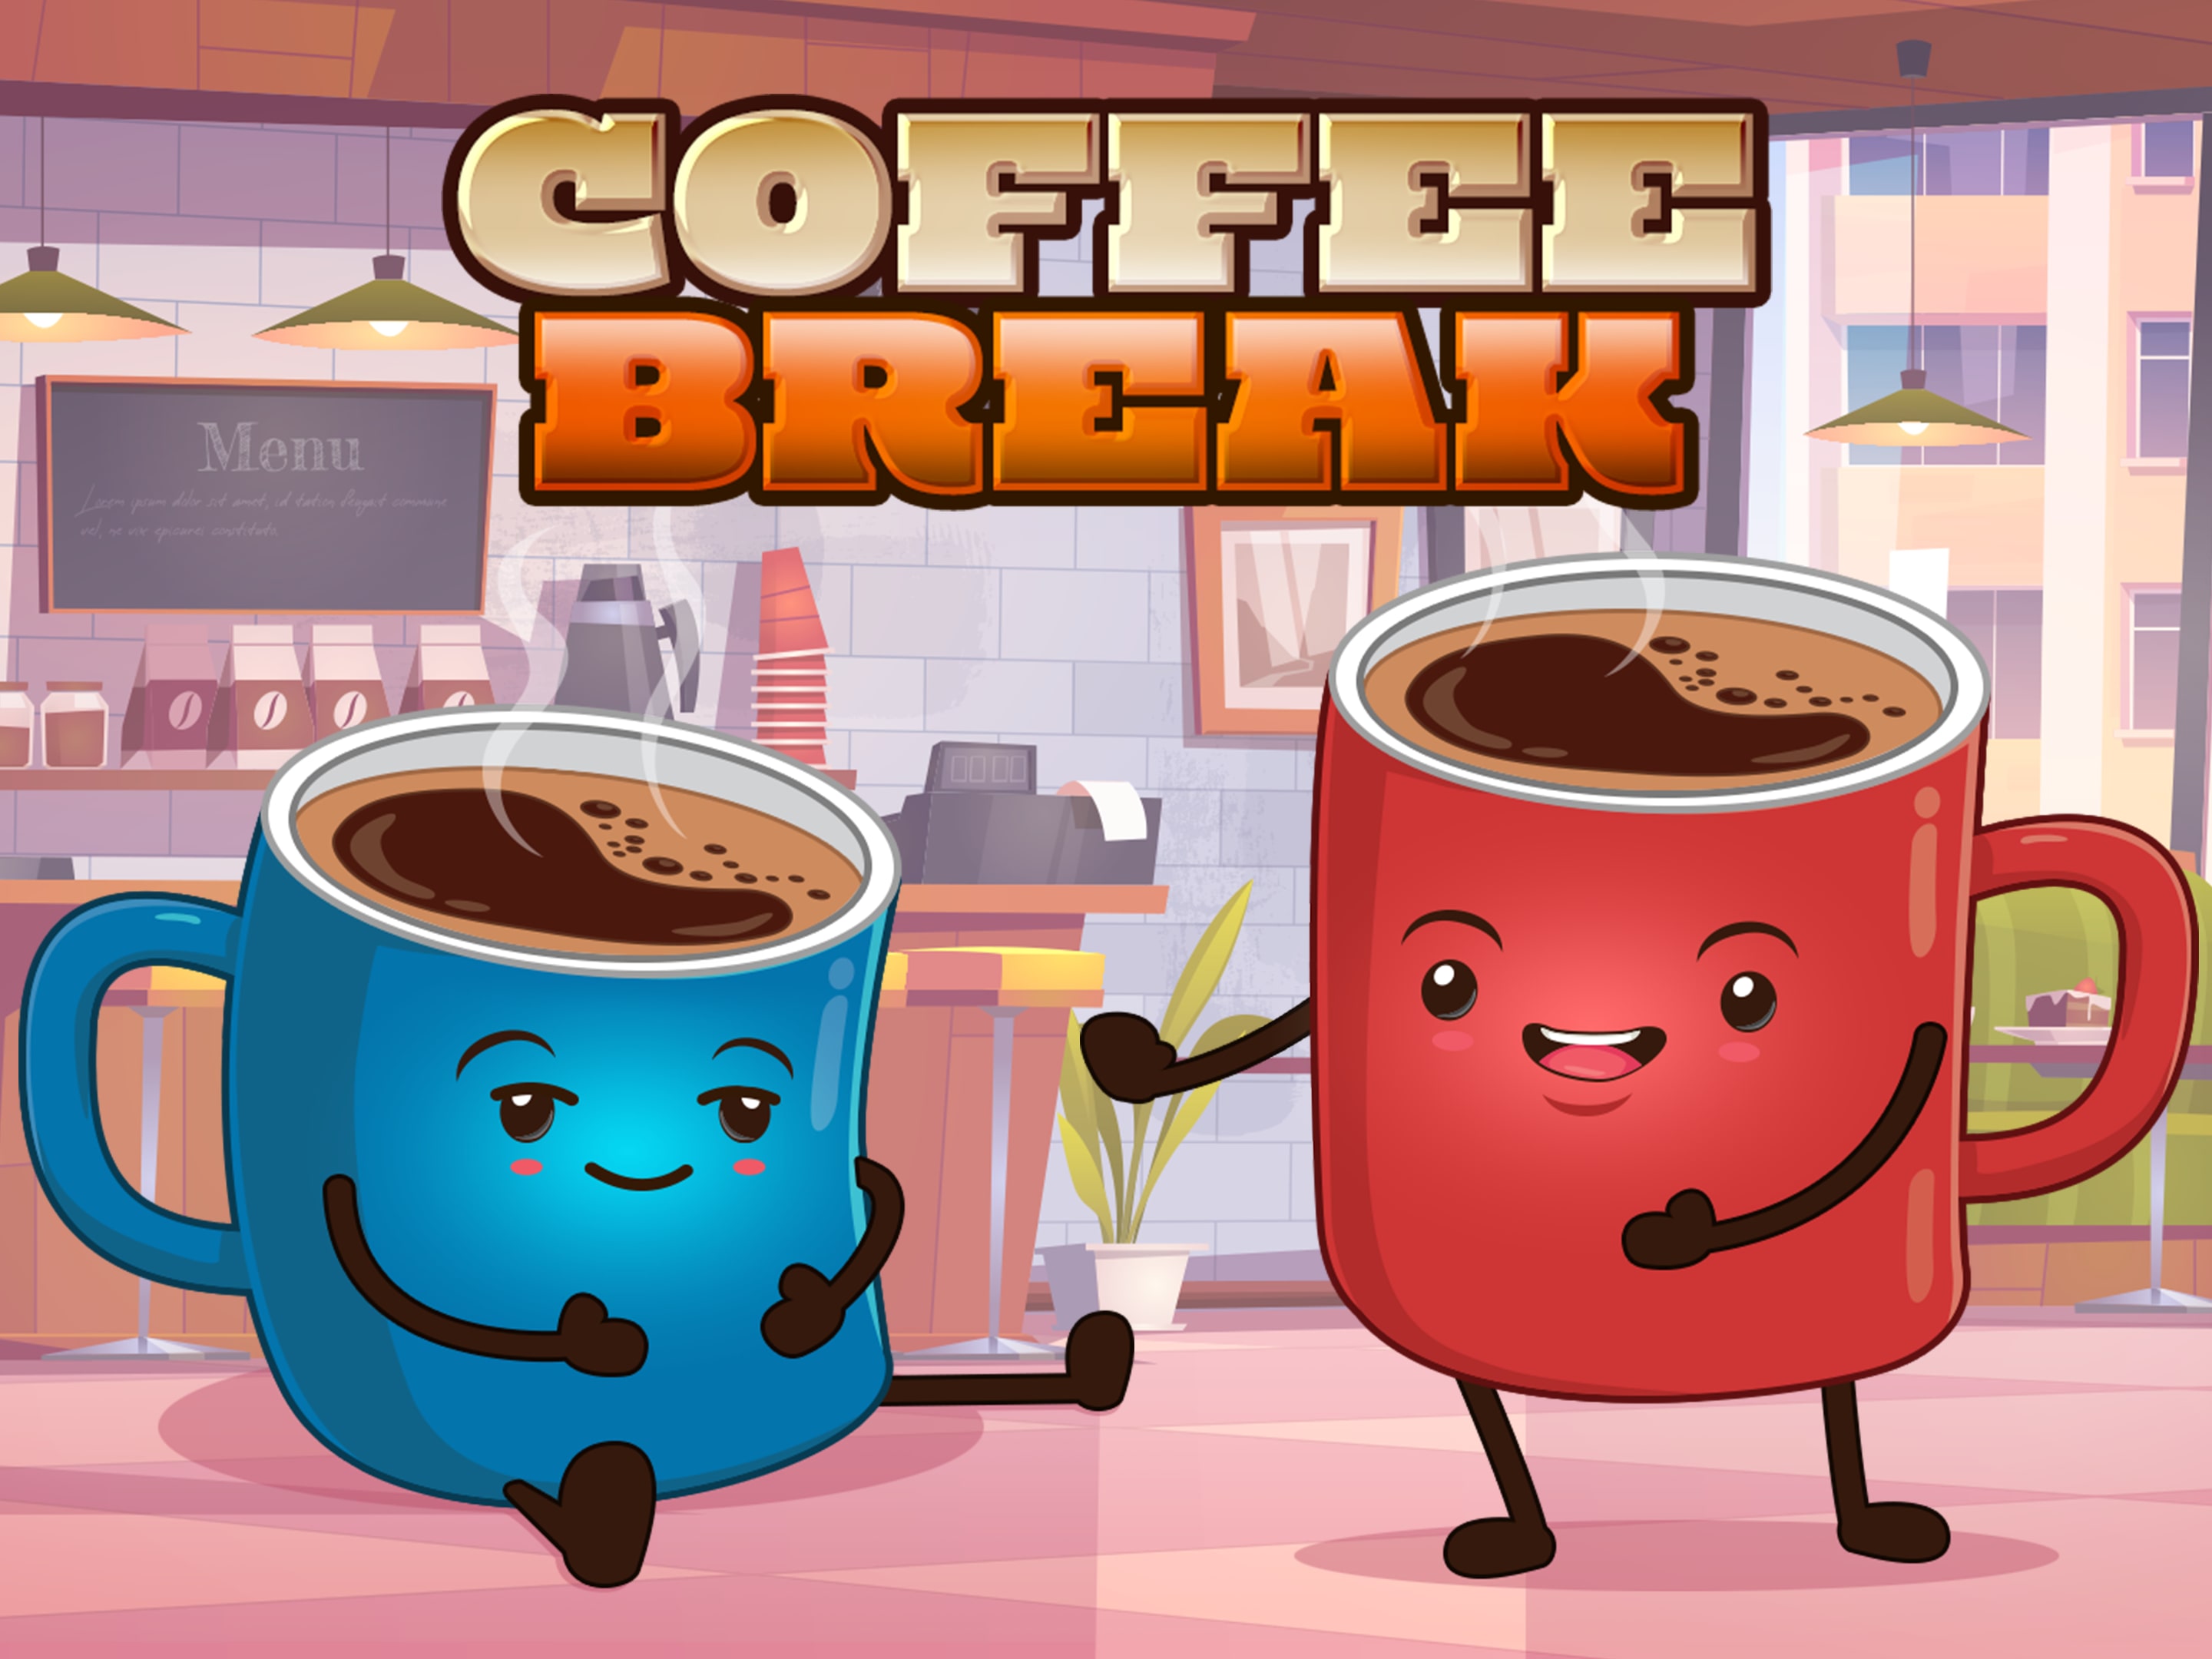 Jogos Casuais Online - Tenha um exelente Coffe Break